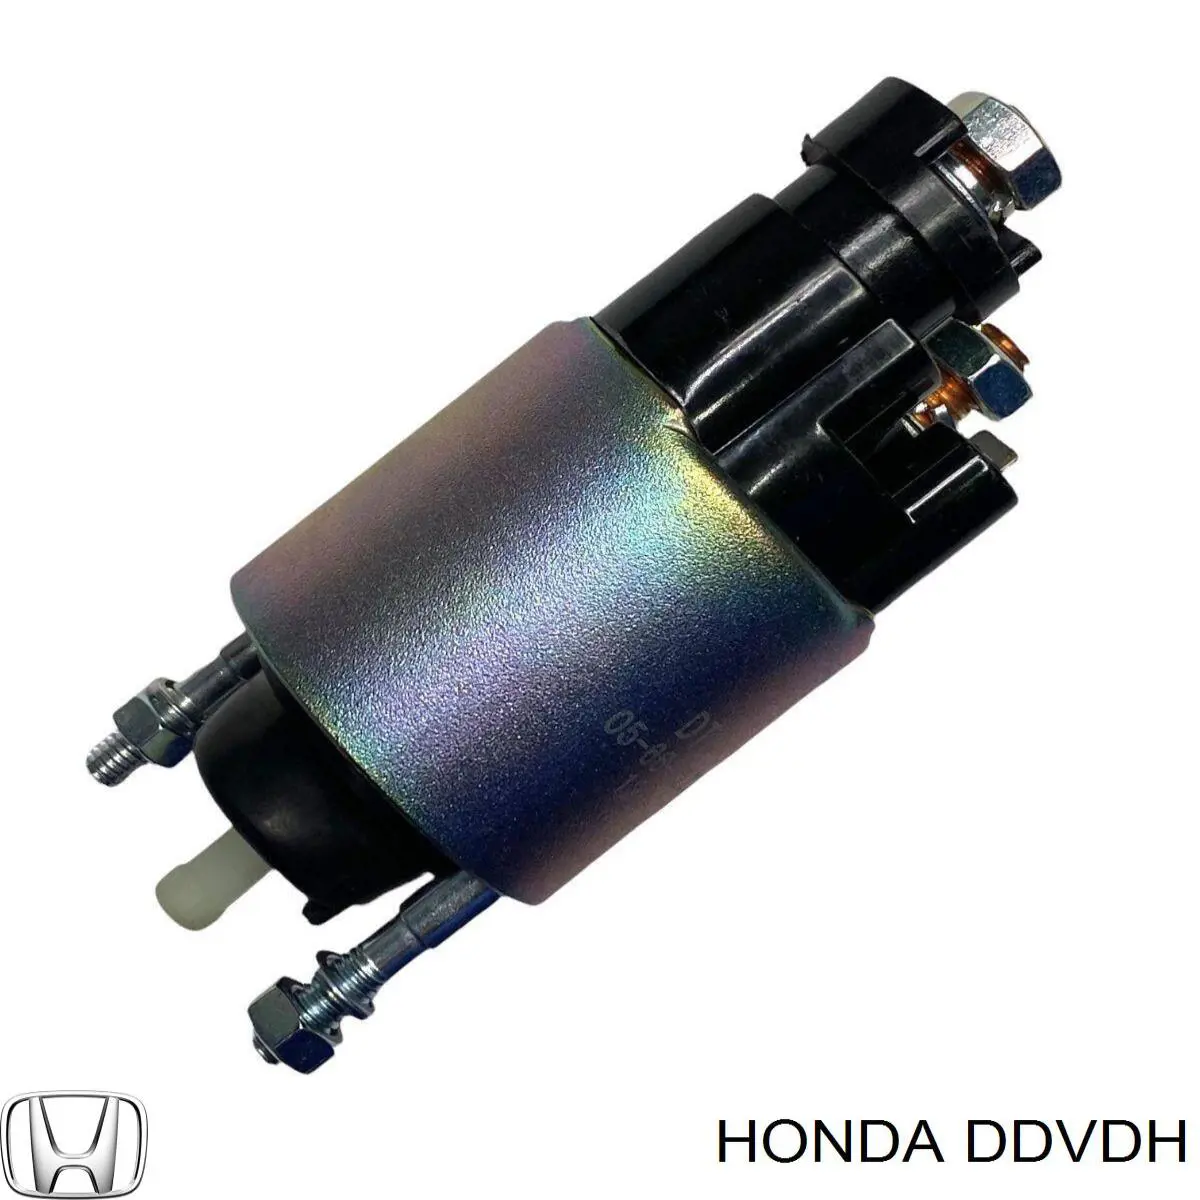 DDVDH Honda motor de arranque